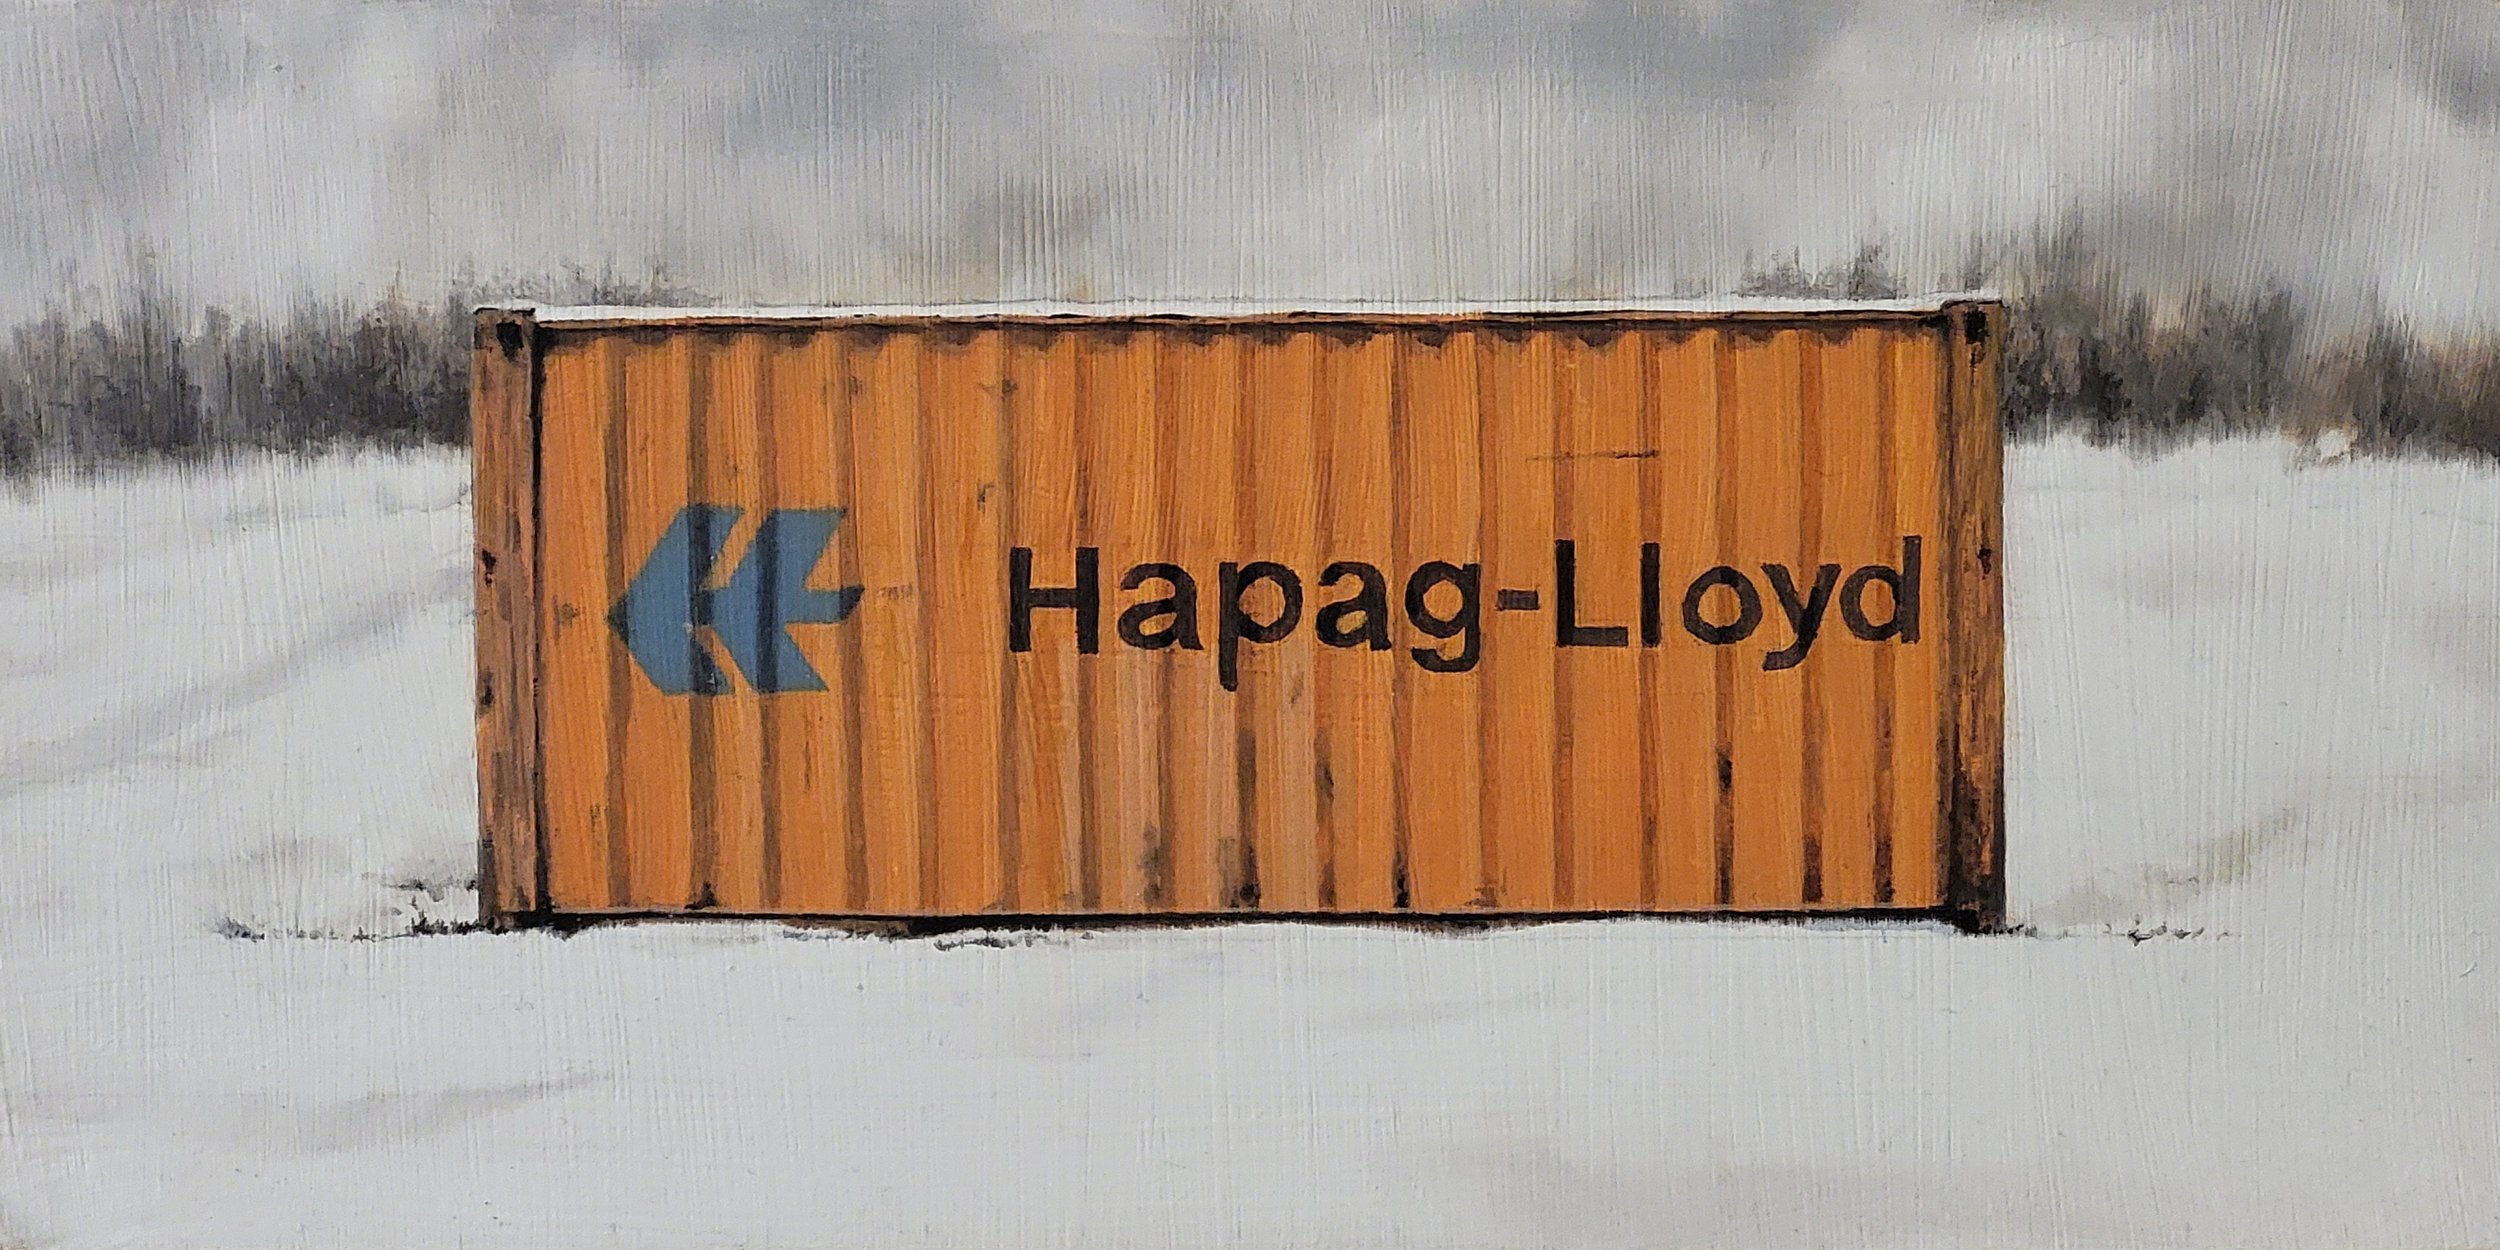 'Study: Hapag-Lloyd in field'